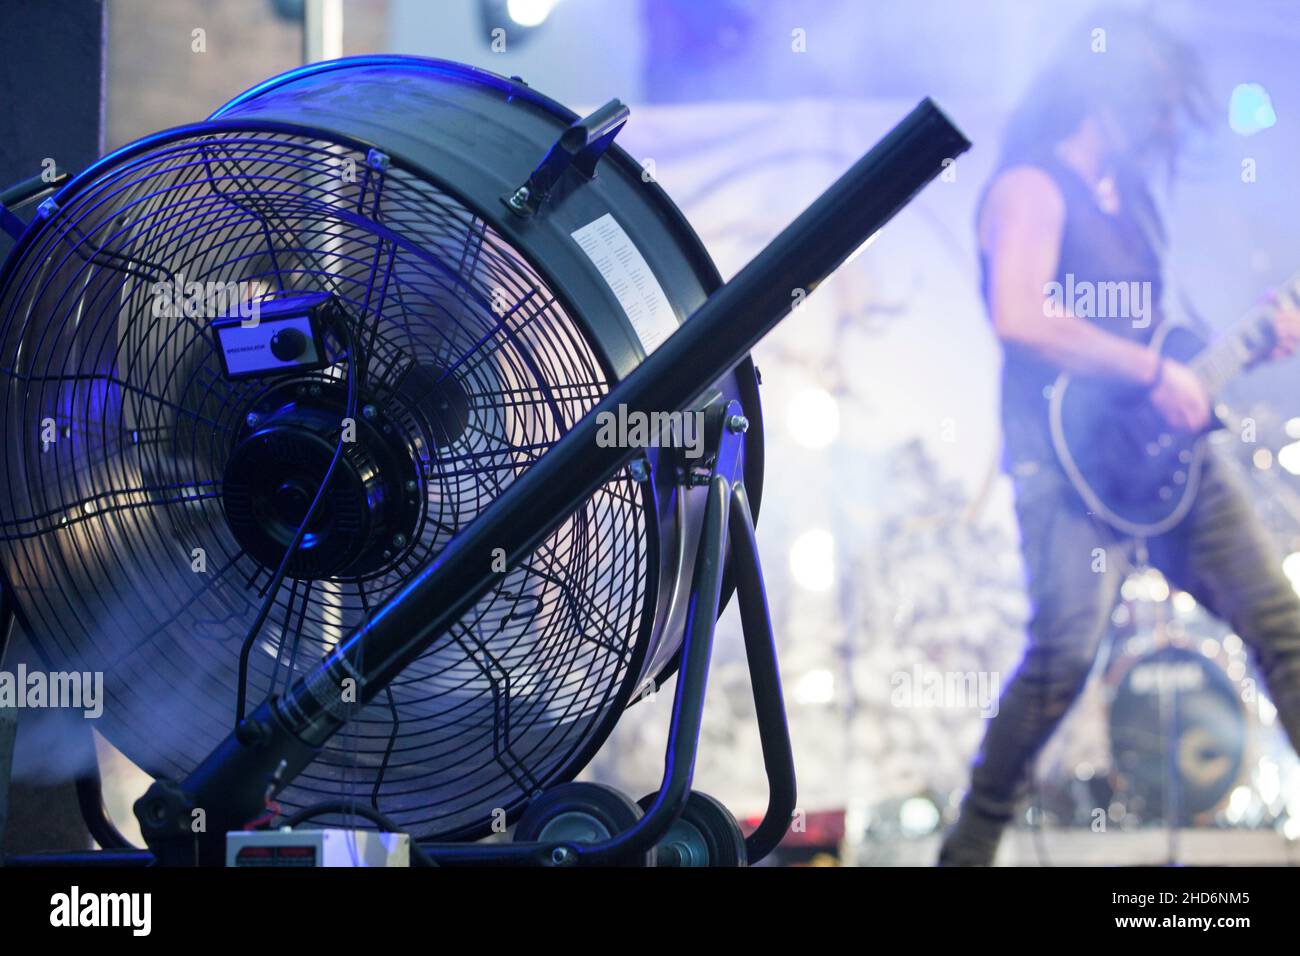 Bühnengebläse, die bei Live-Rock-Performance mit einer Dunstmaschine verwendet wird. Musiker im Hintergrund. Stockfoto